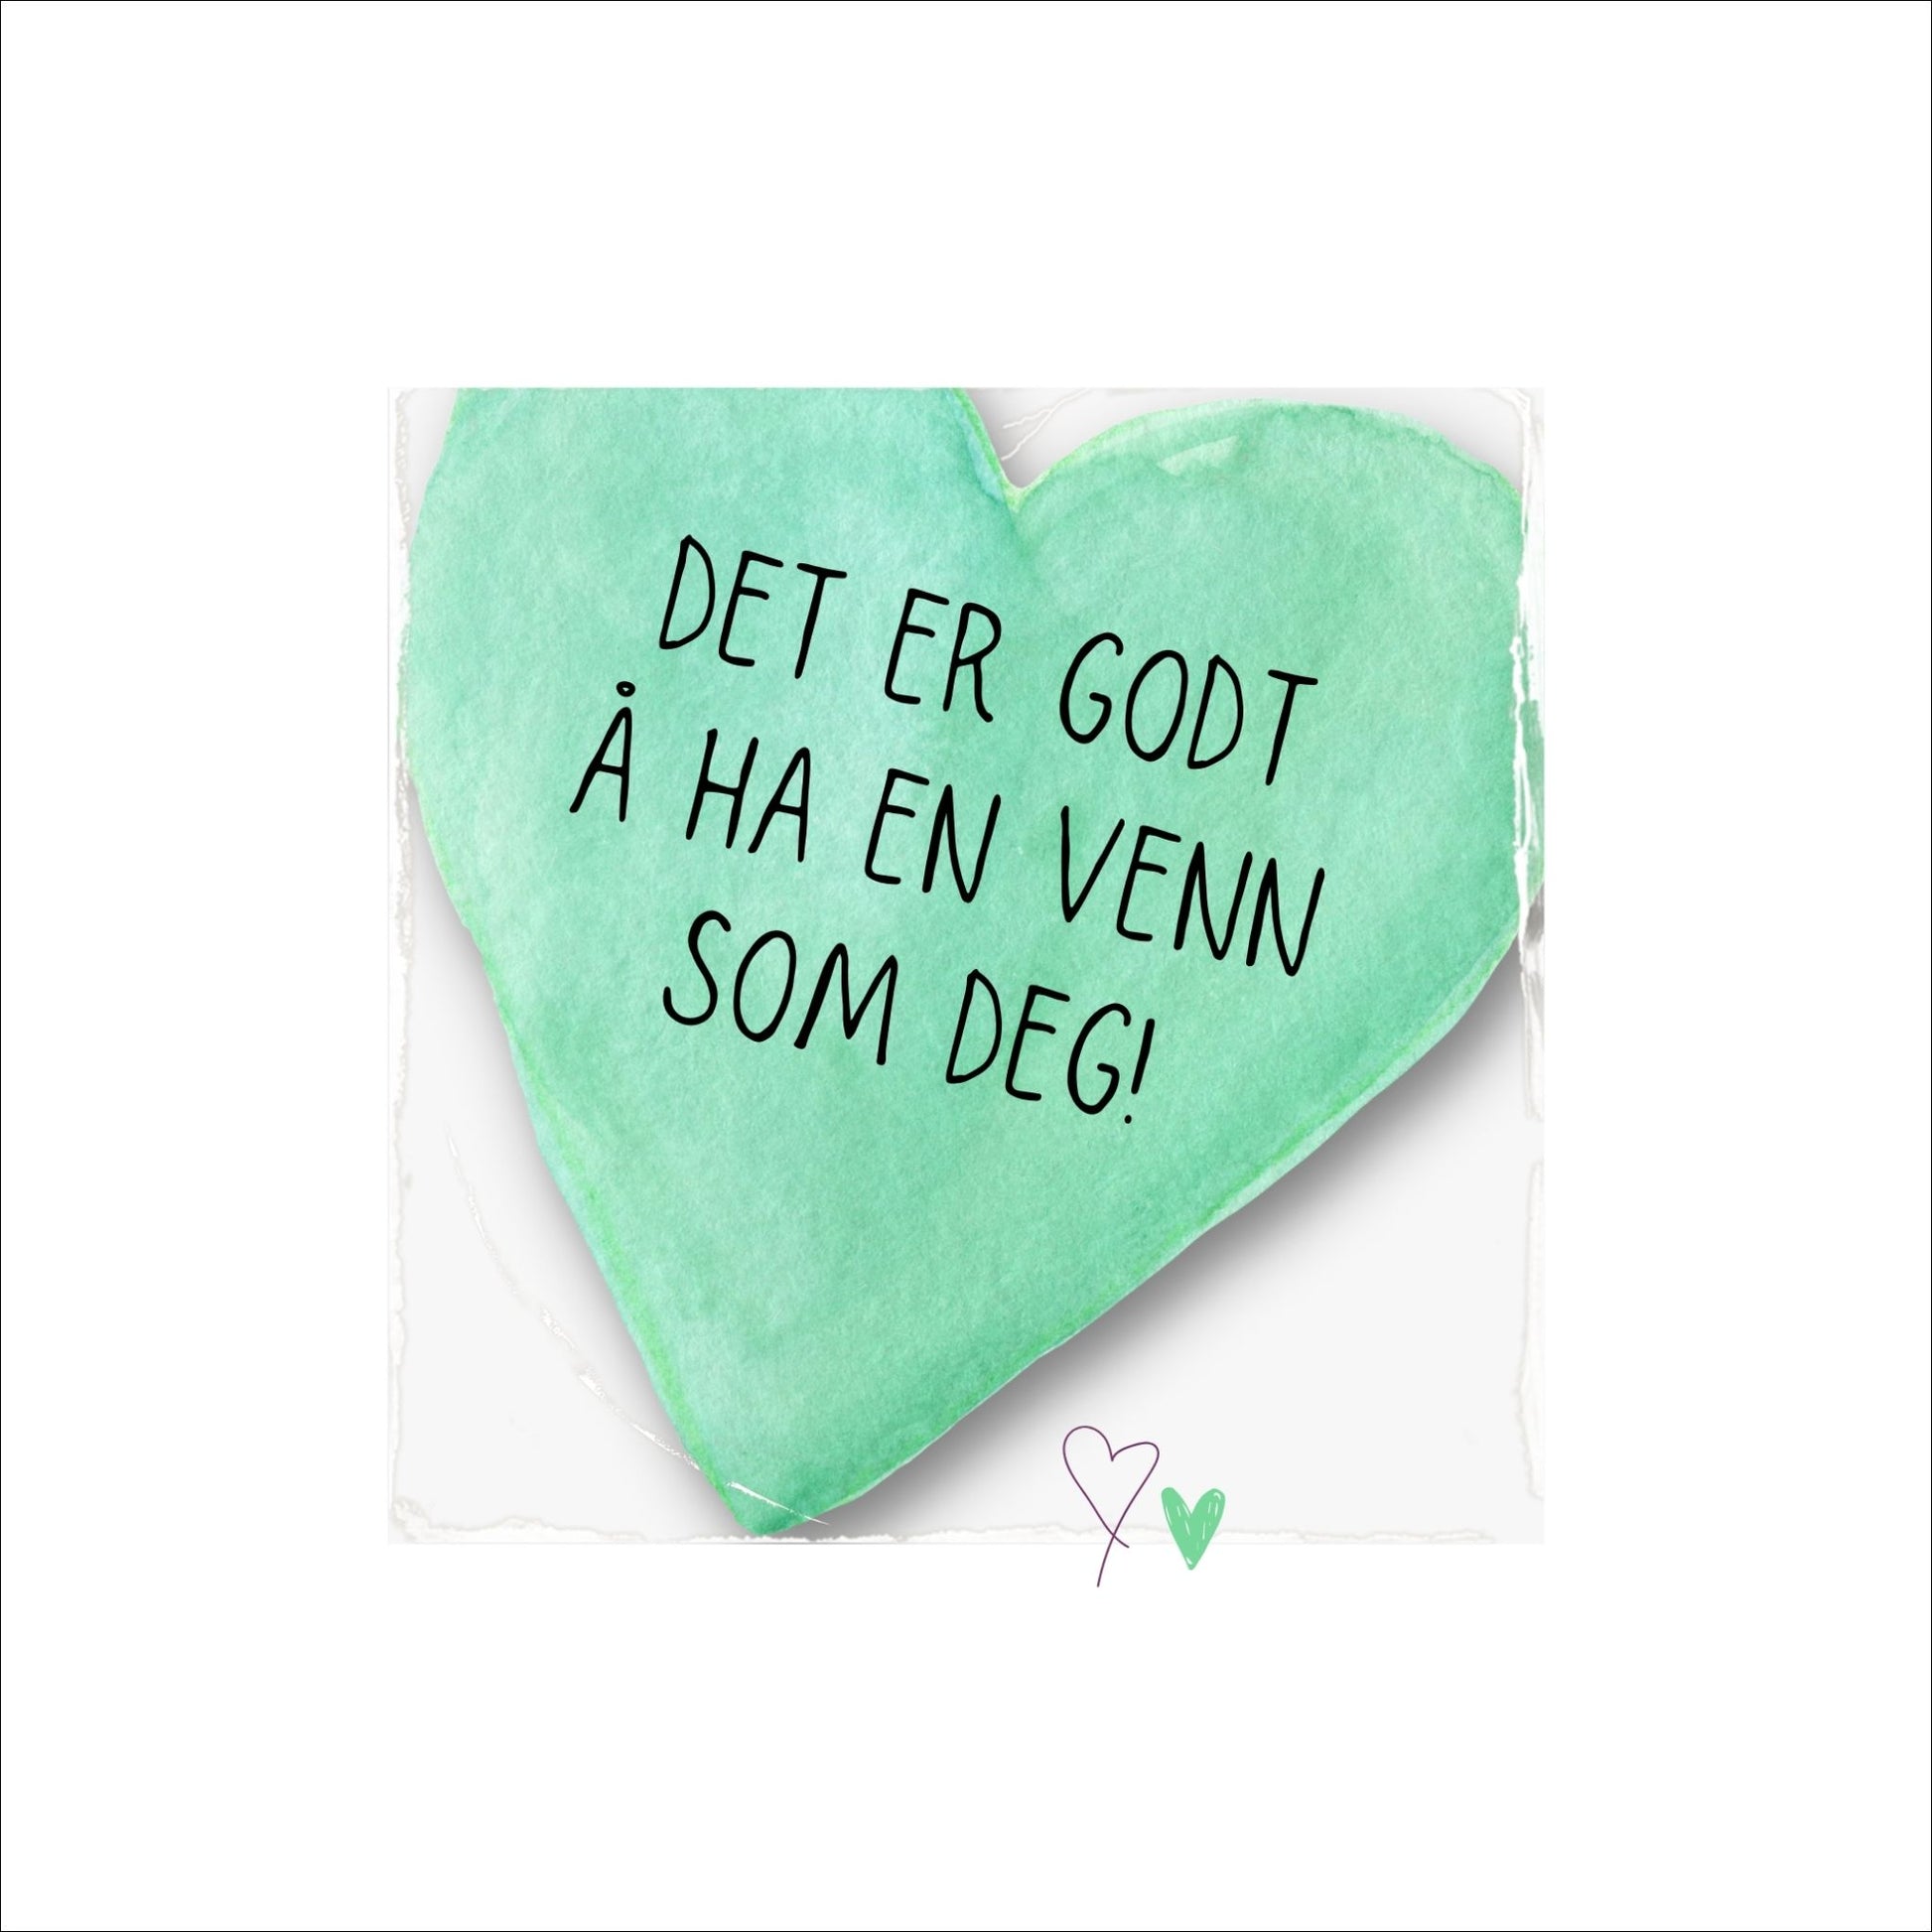 Plakat med lysegrønt hjerte og tekst "Det er godt å ha en venn som deg". Med hvit kant på 4 cm. 